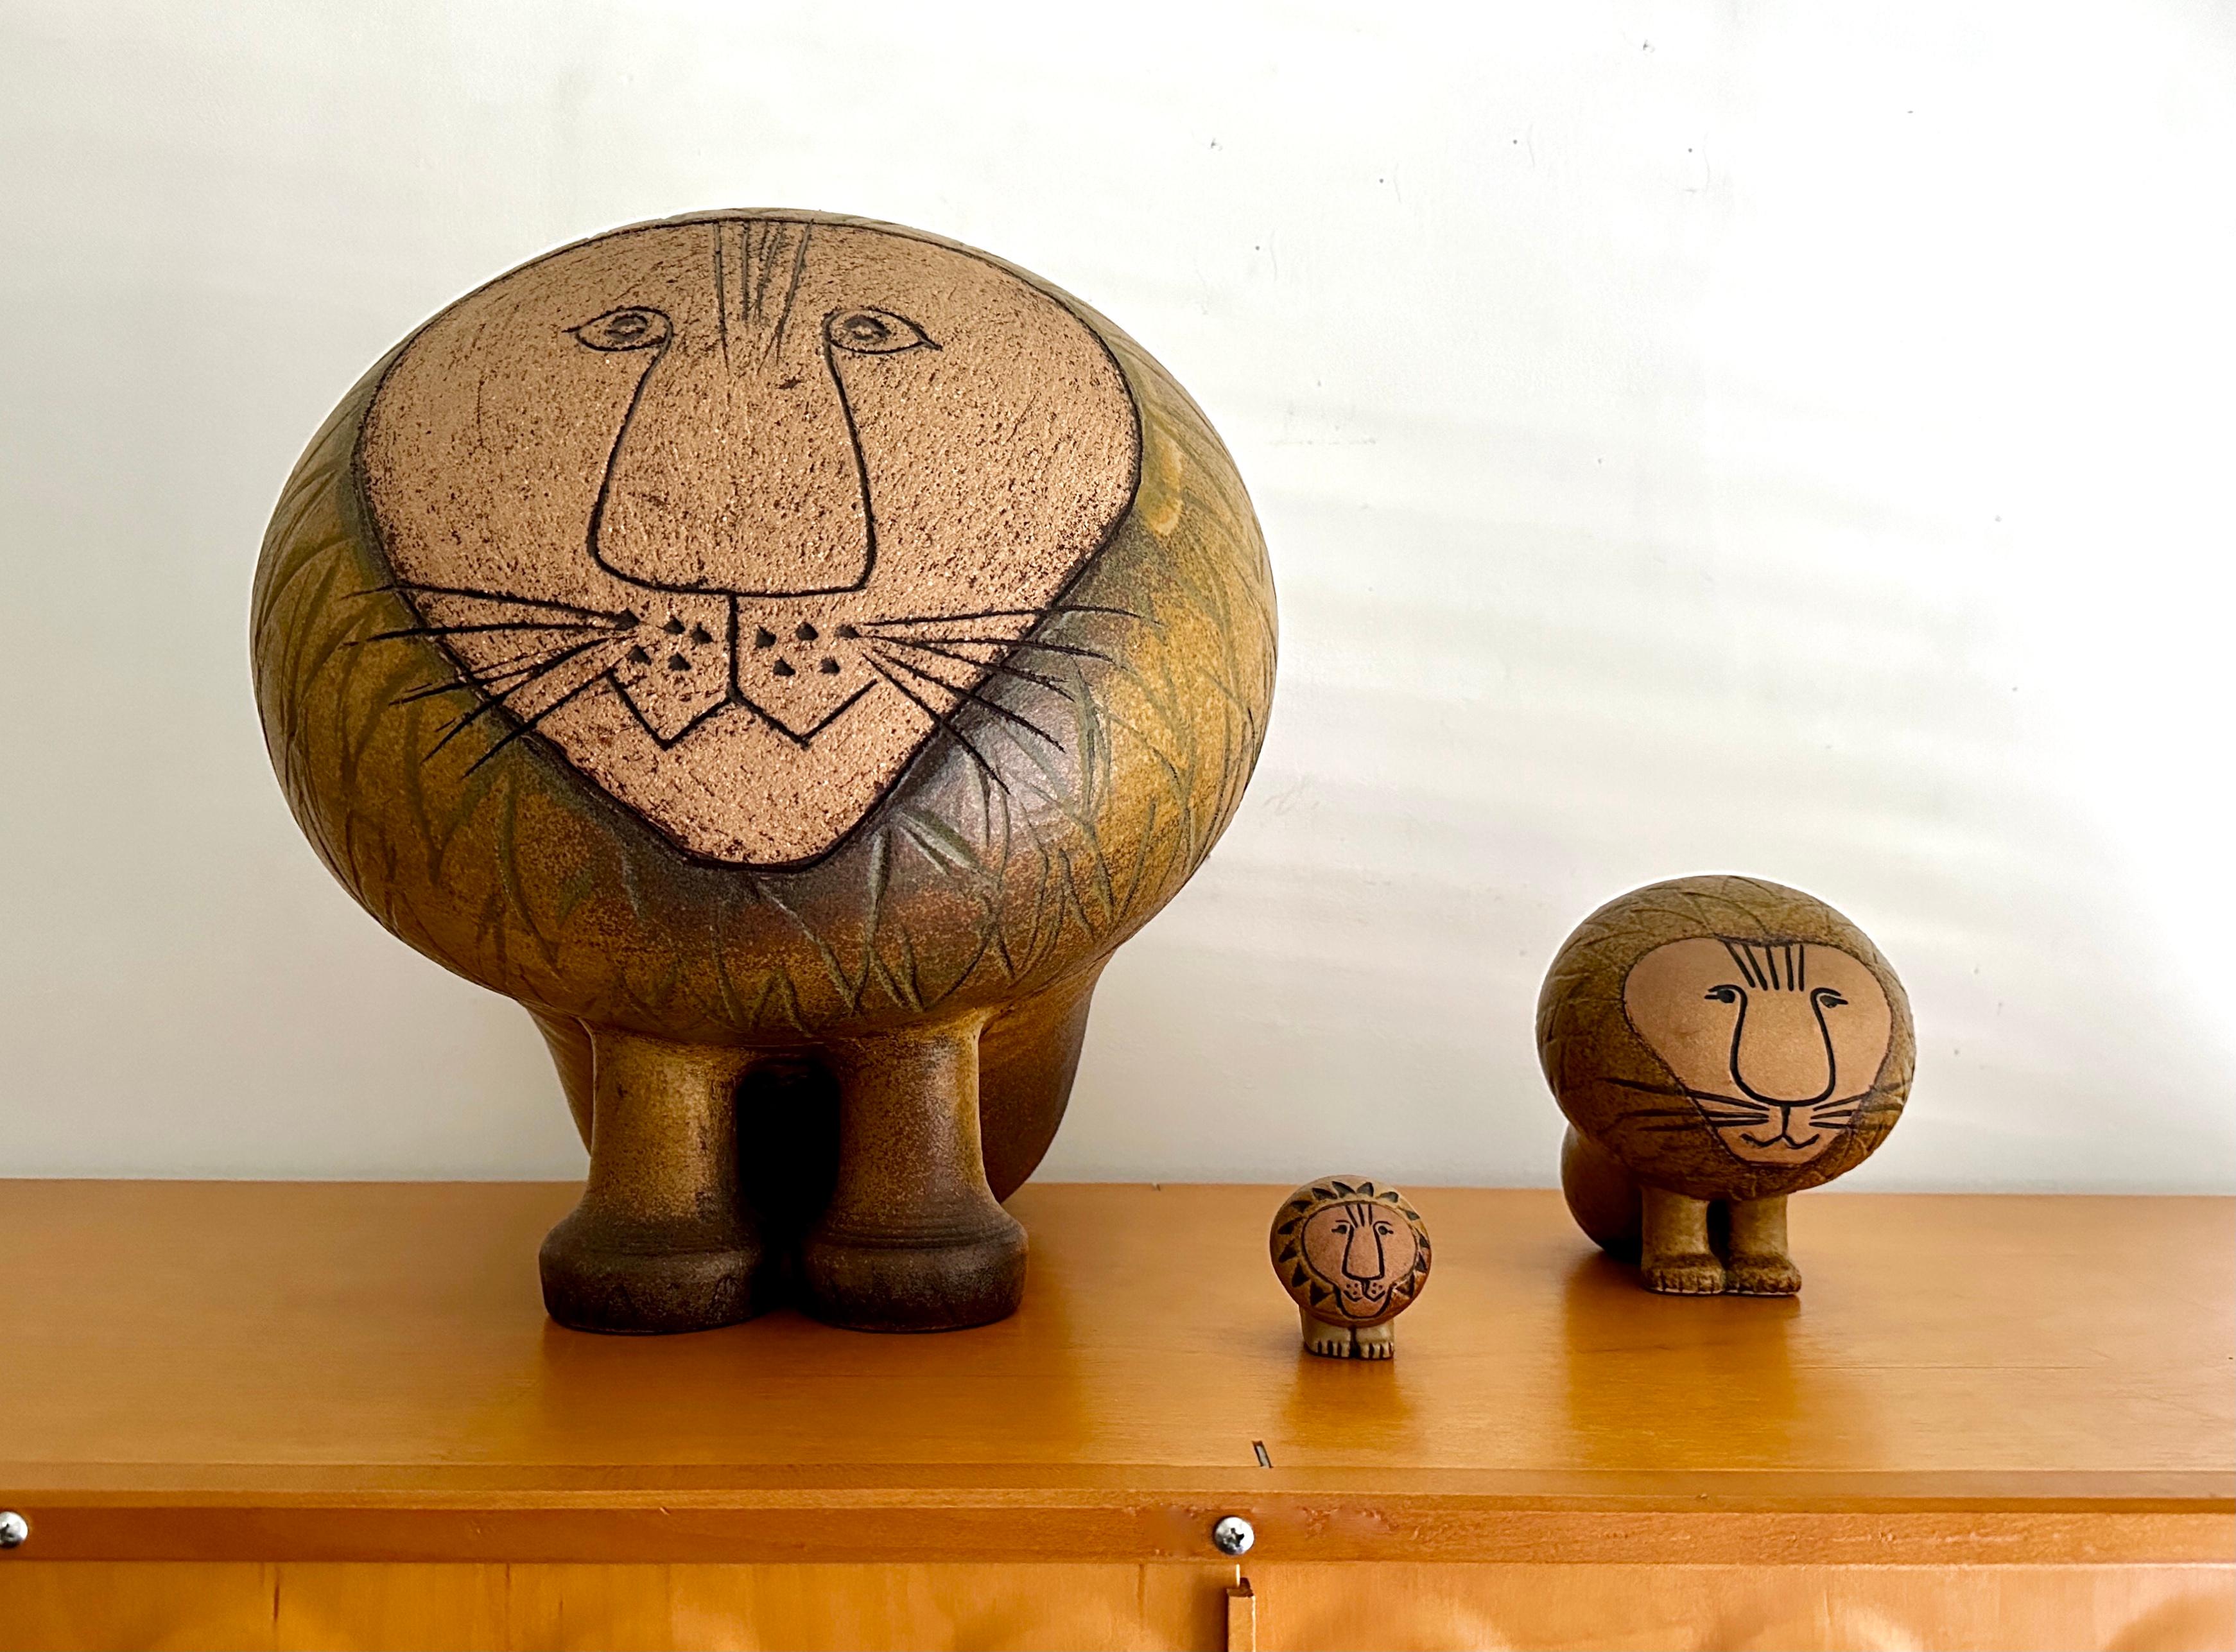 Trois lions de tailles différentes conçus par la célèbre designer et céramiste Lisa Larson. Les lions sont issus de la série Afrika, conçue en 1964. L'ensemble se compose d'un mini, d'un grand et d'un gigantesque lion. Produit dans les années